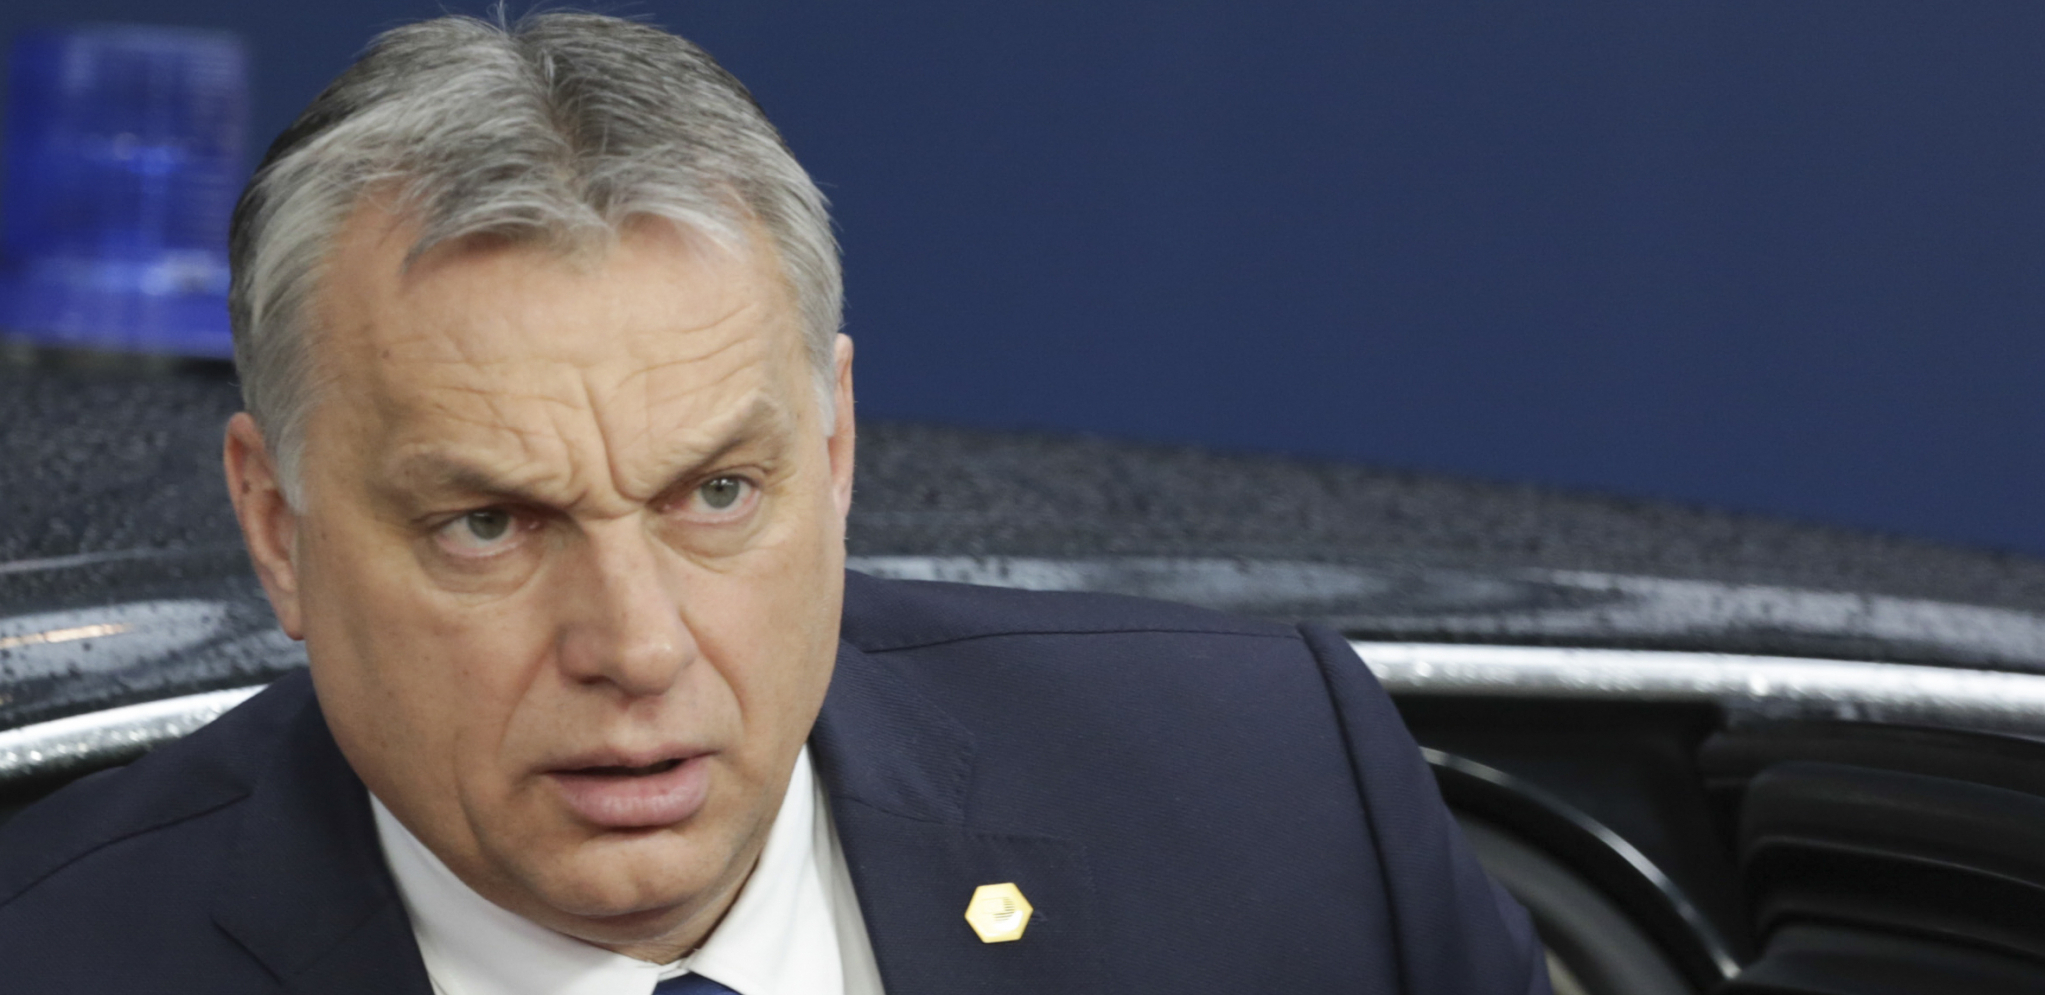 "DOBIĆEMO SVE ŠTO NAM JE EVROPSKA UNIJA DUŽNA" Orban postavio ultimatum, pa poslao jasnu poruku